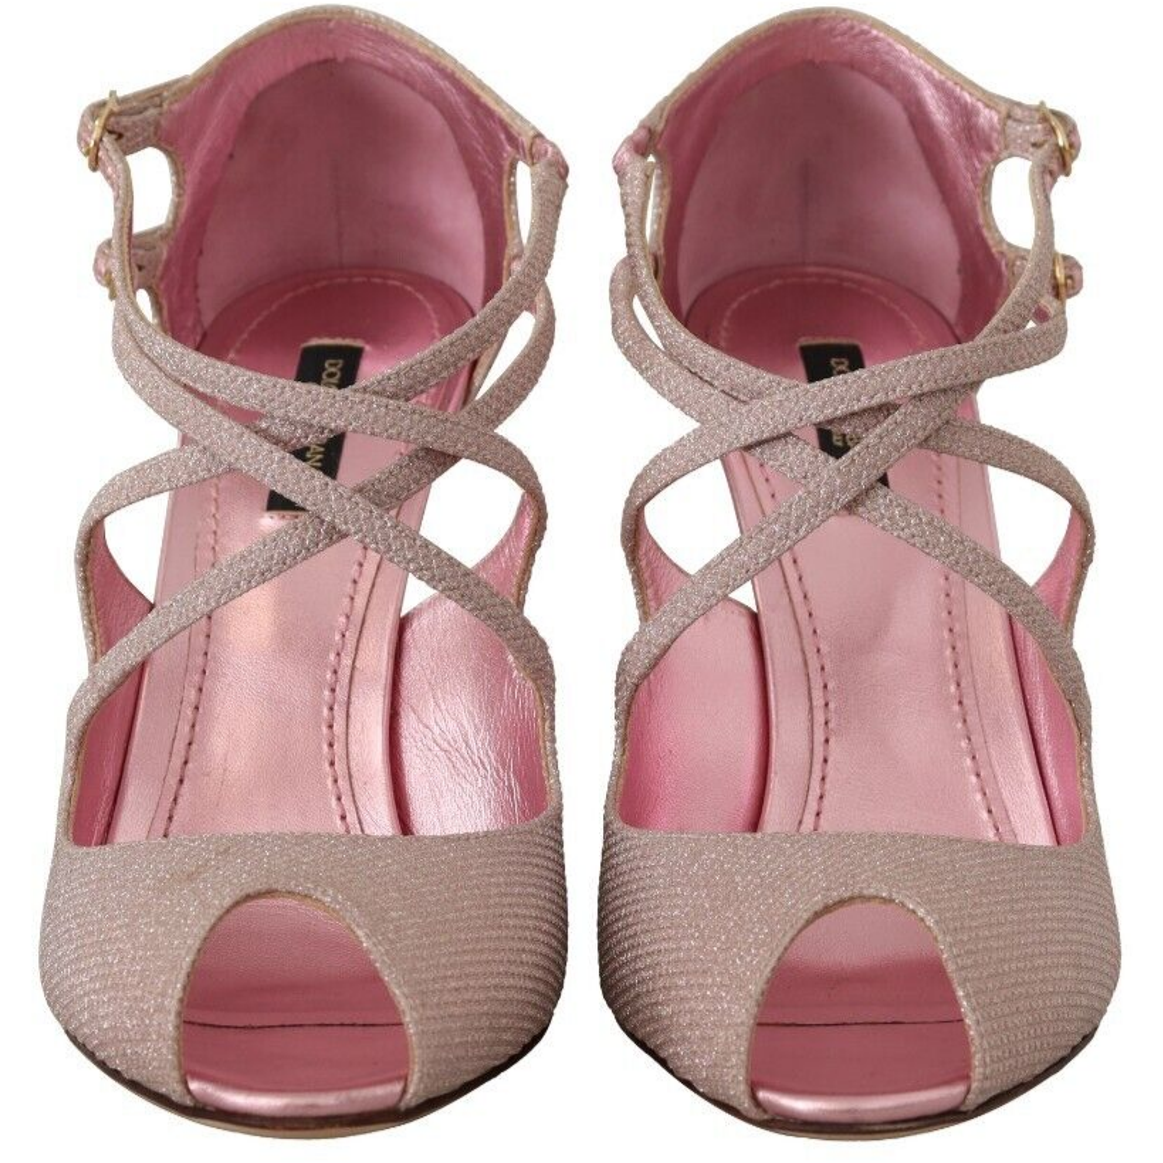 Dolce & Gabbana Pink Glitter Peep Toe High Heels Sandals pink-glittered-strappy-heels-sandals-shoes s-l1600-2-3-5768d743-50e.png